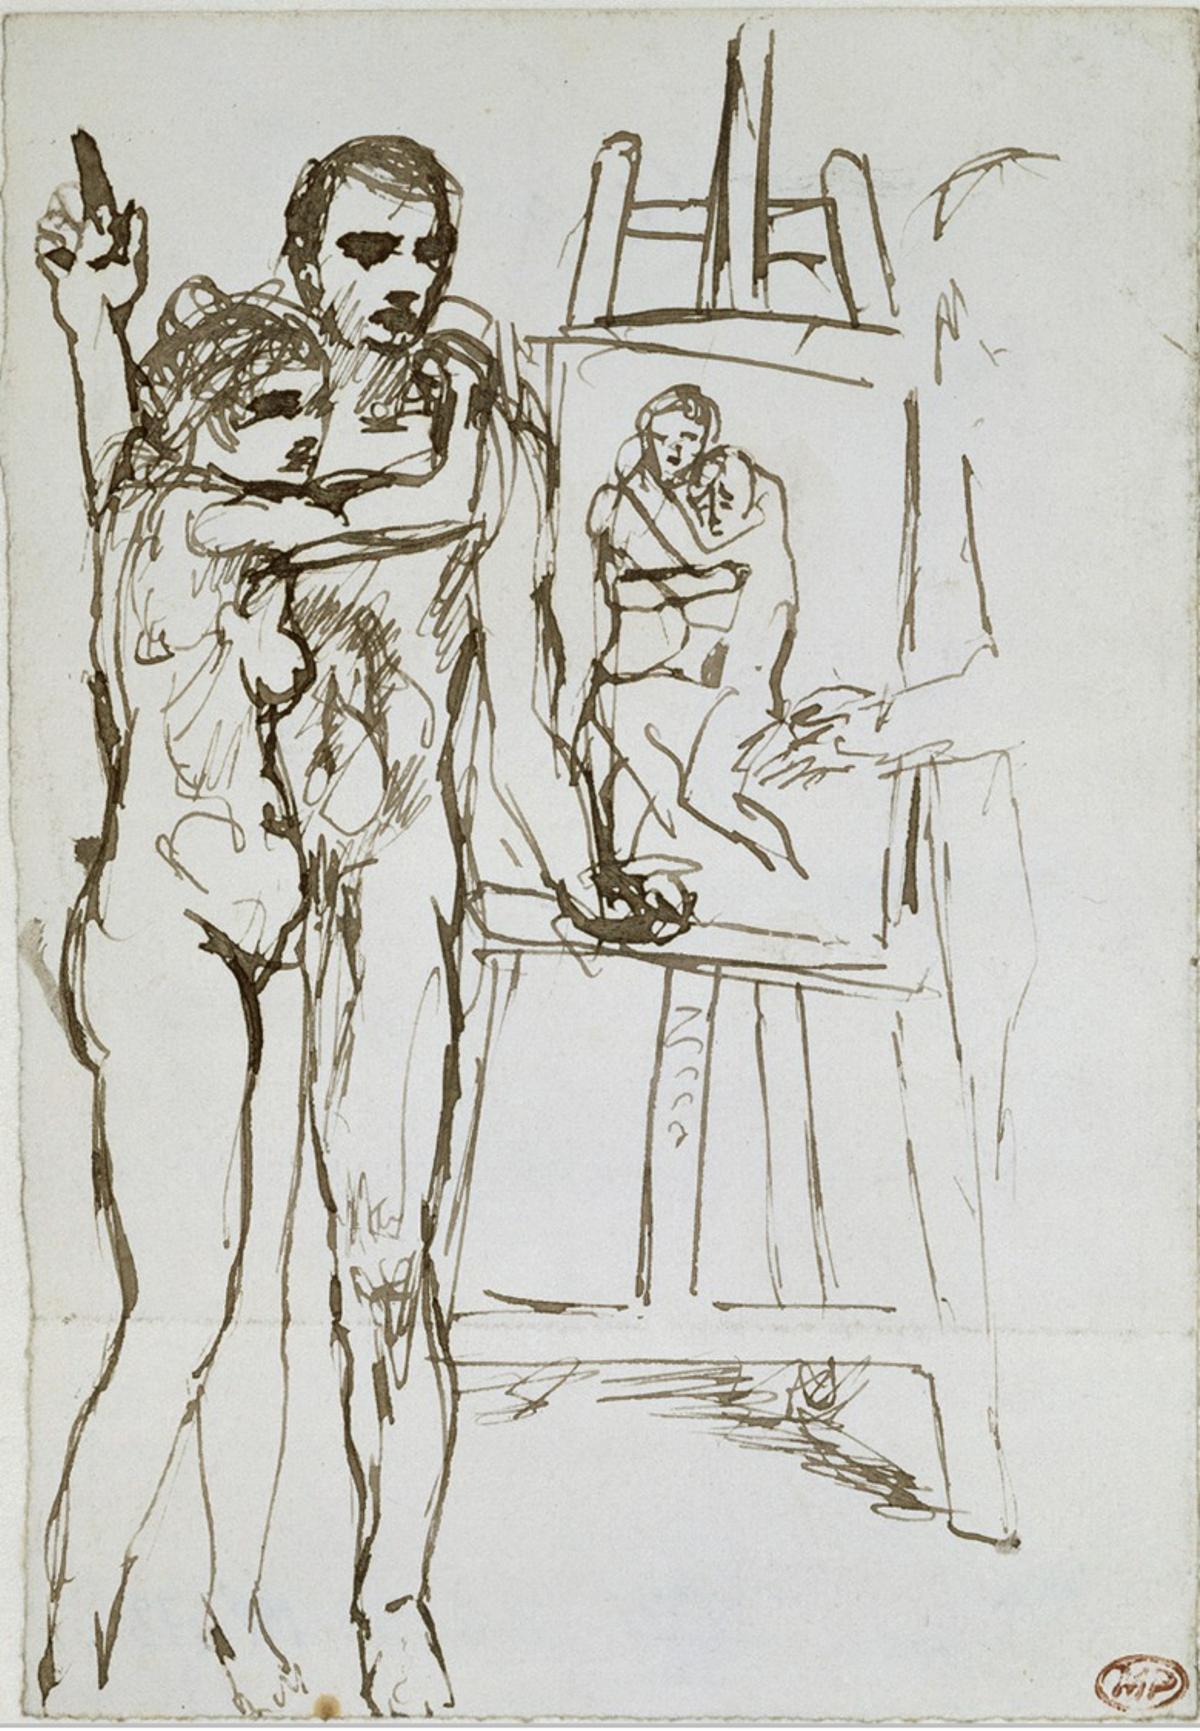 Picasso y Germaine en un boceto del cuadro 'La vida'